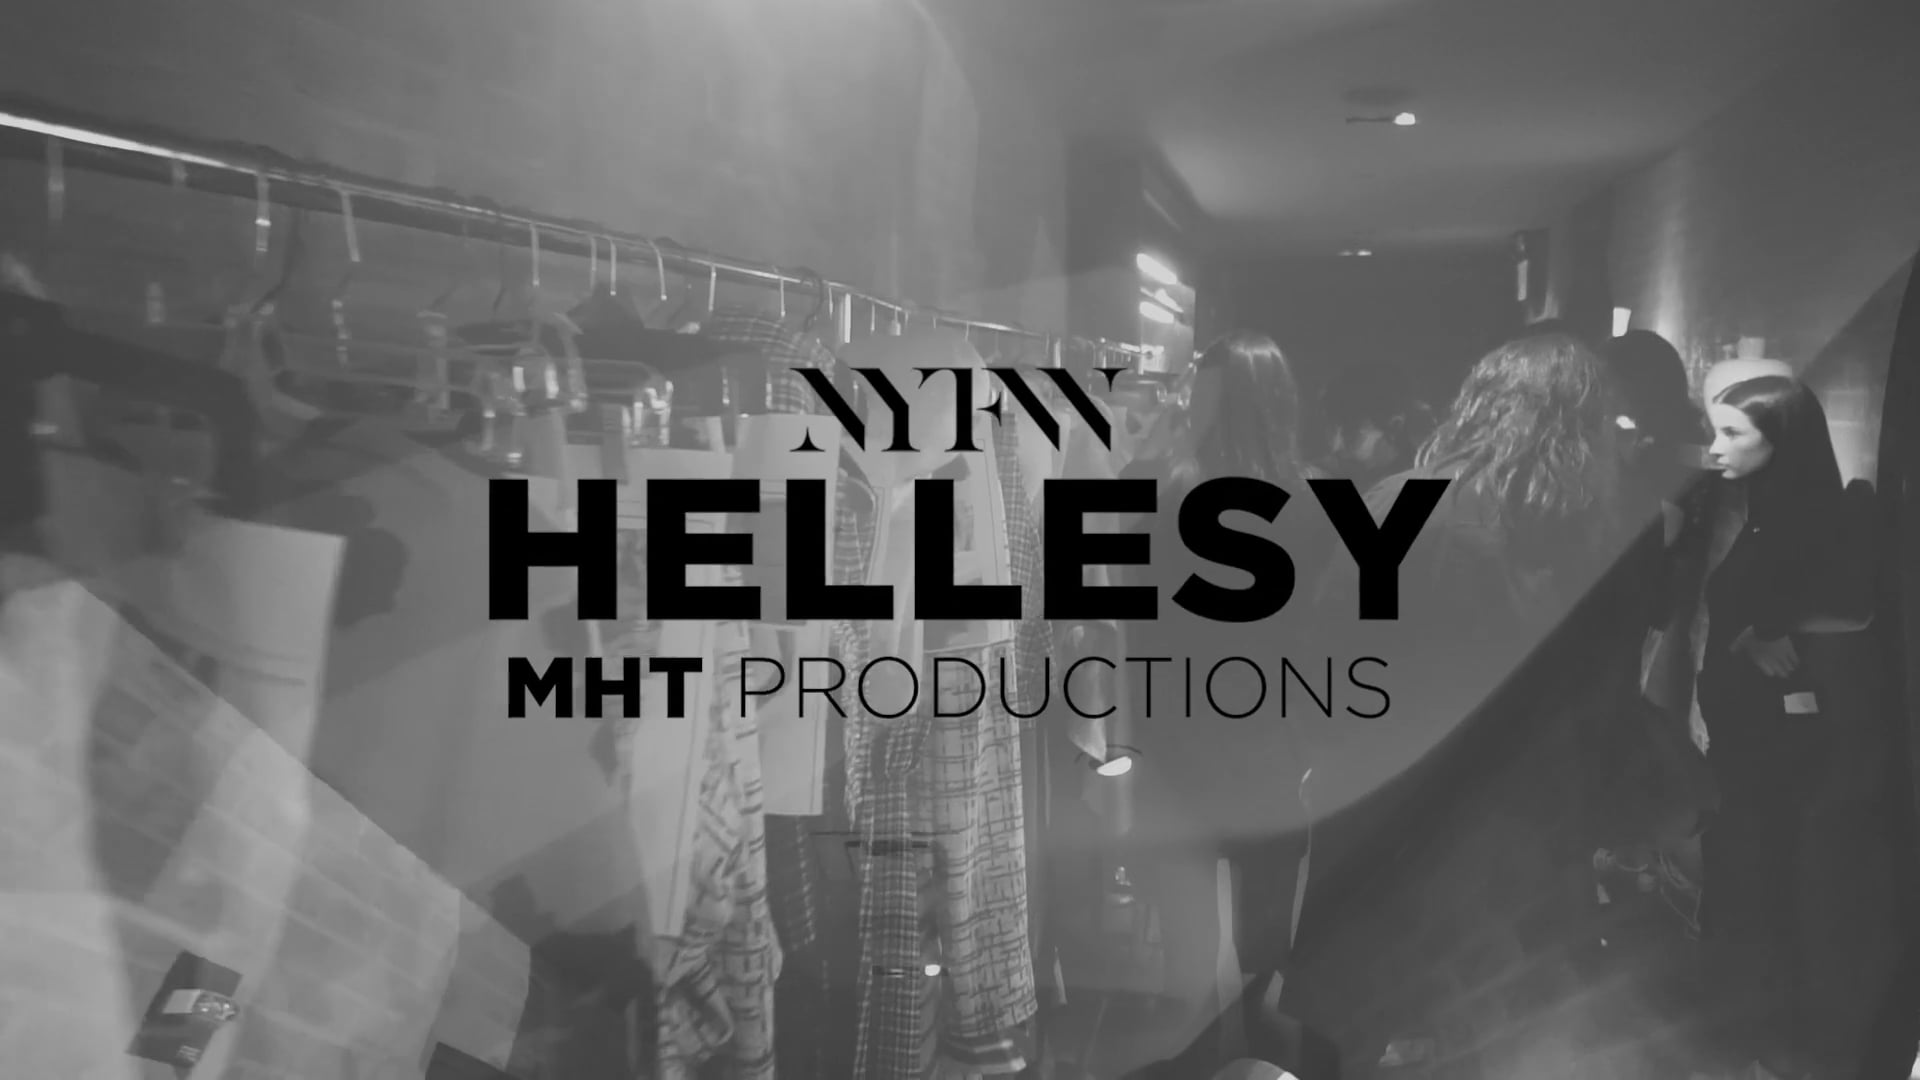 NYFW / Fashion Week in NYC /HELLESSY